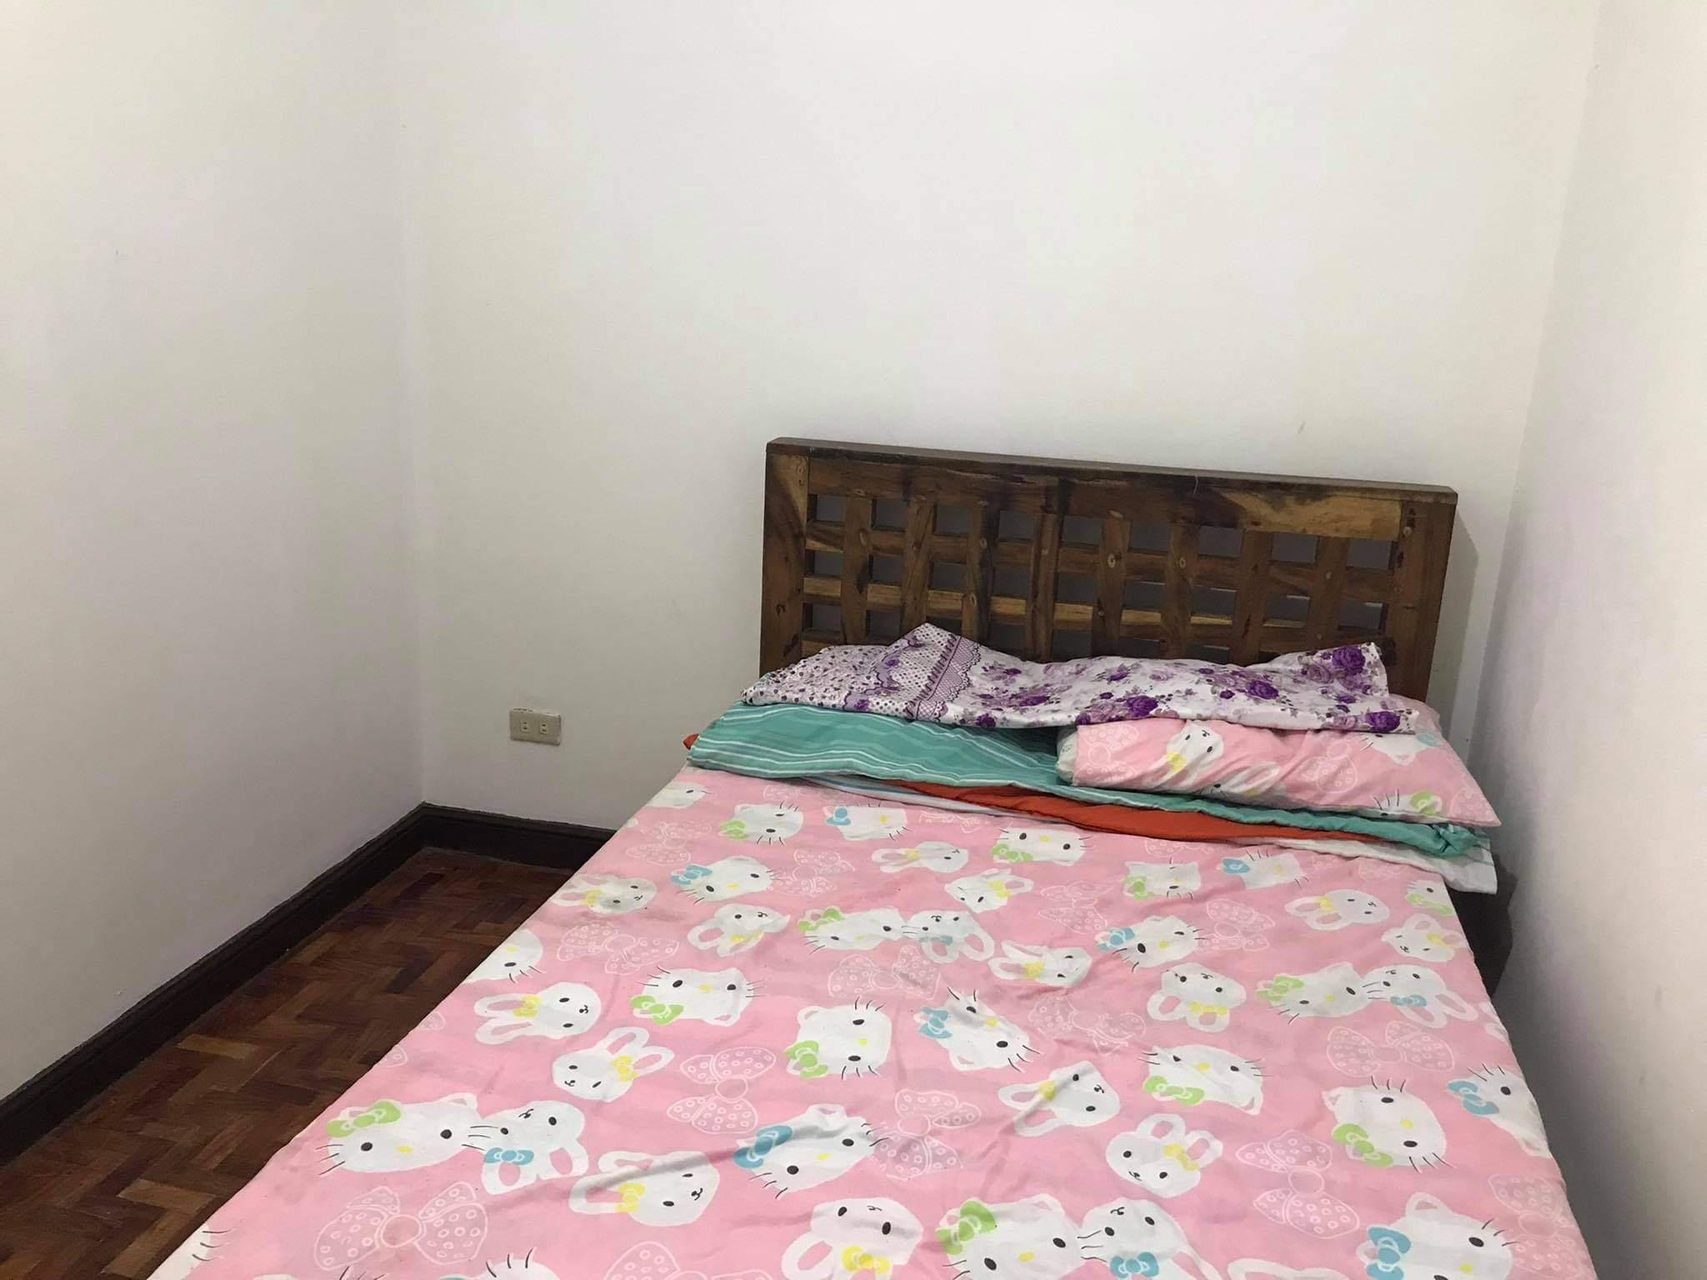 Bedroom 4, Sofichem Marketing Property, Tagaytay City